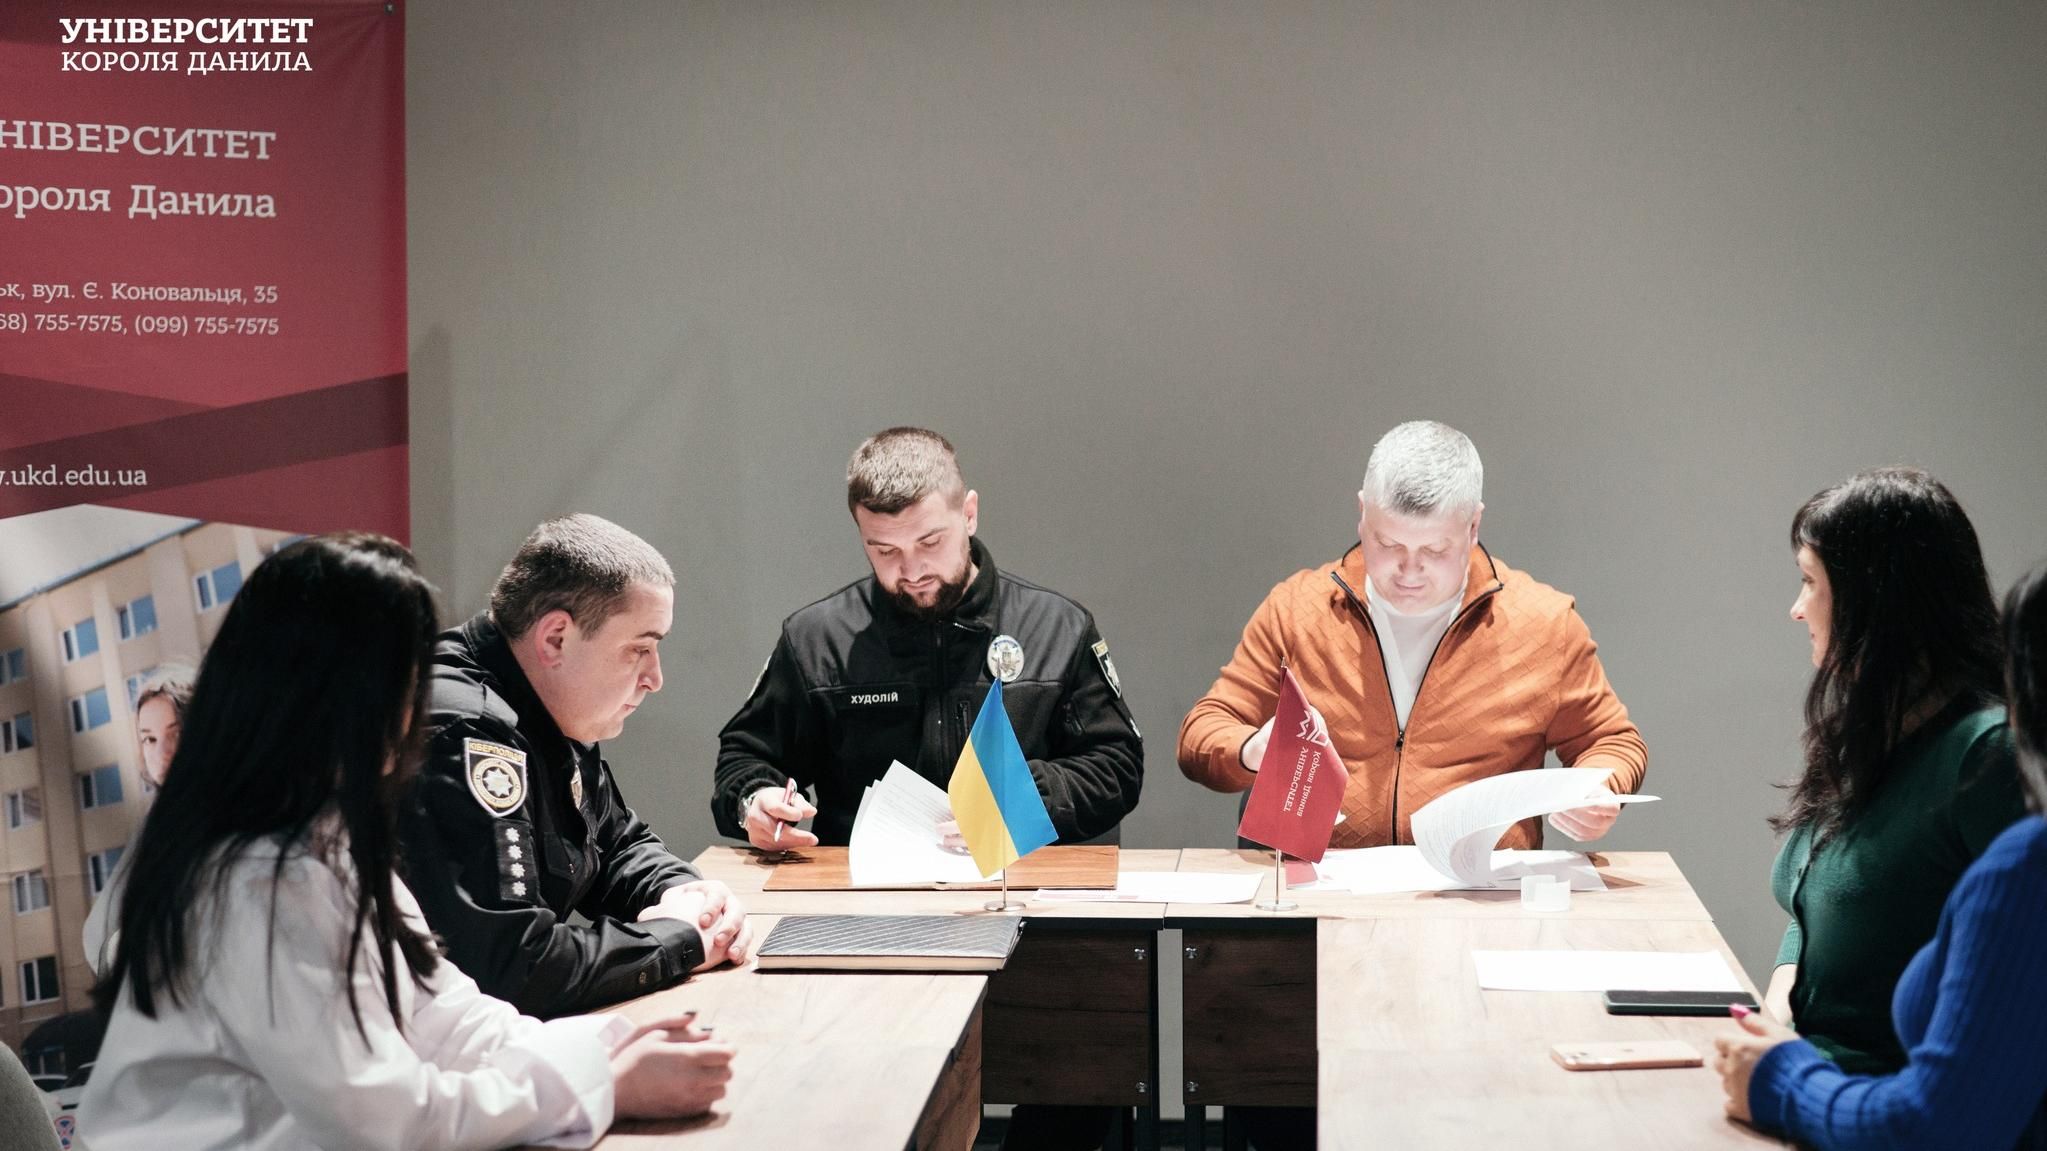 Меморандум про співпрацю з Департаментом кіберполіції Національної поліції України уклали сьогодні в УКД